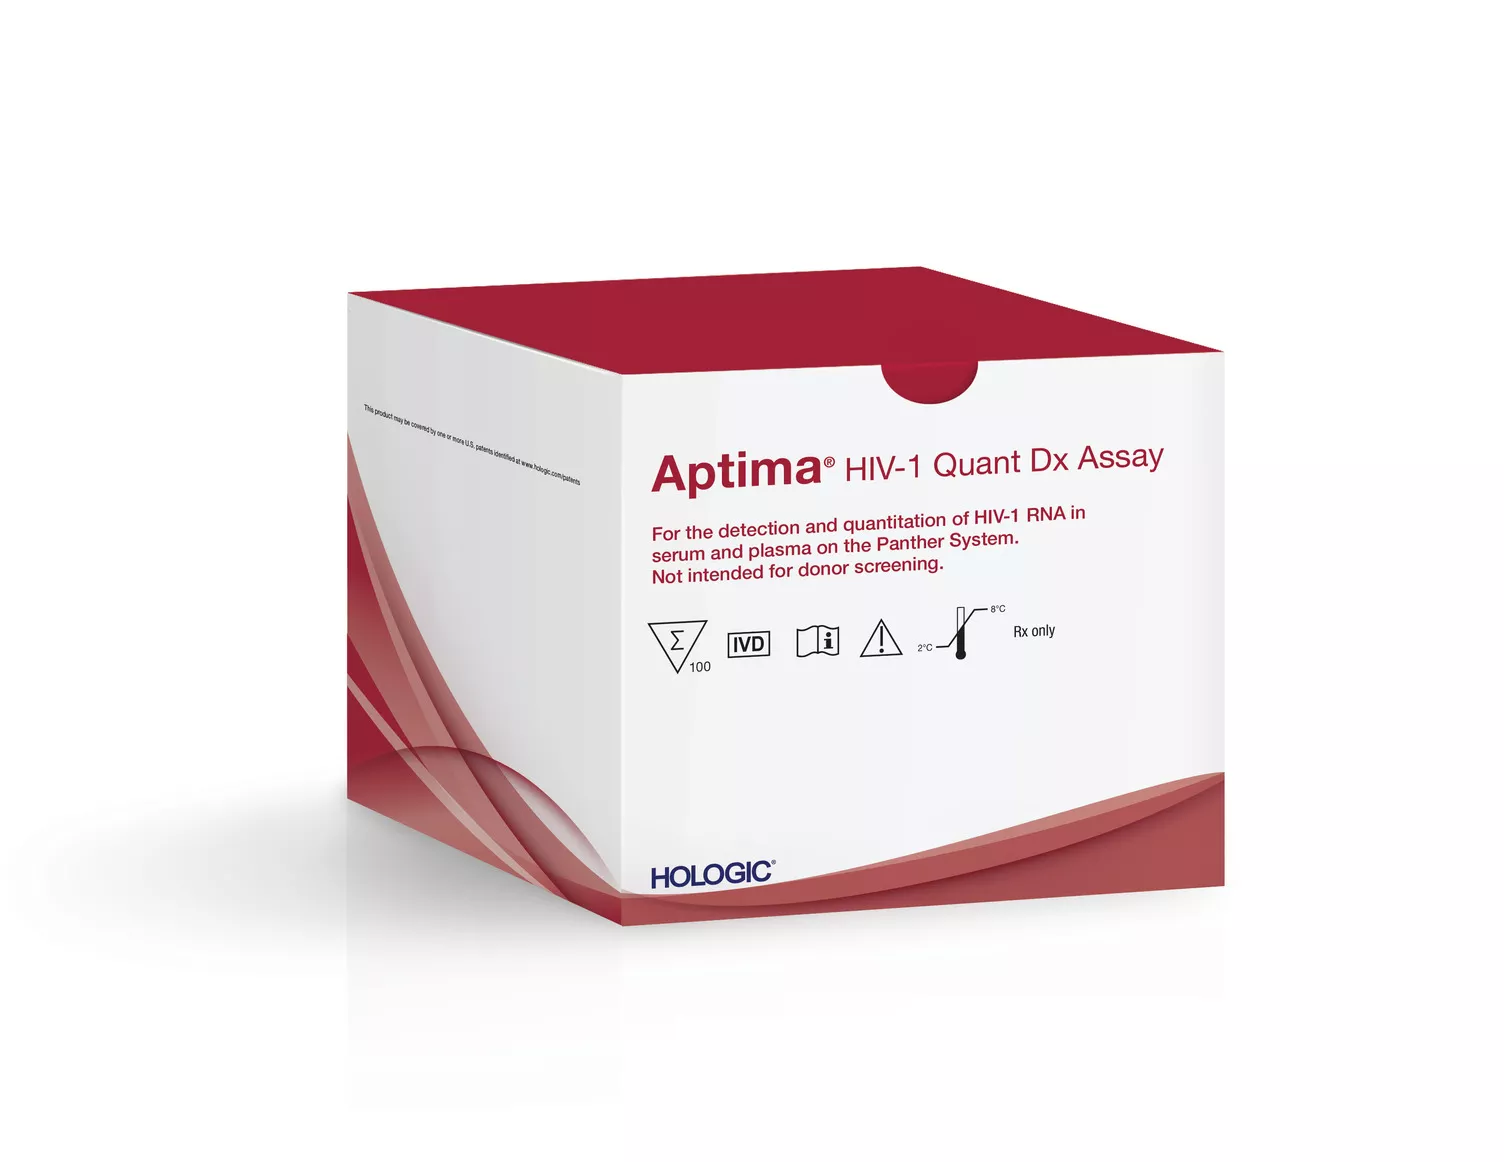 Image of Aptima™ HIV-1 Quant Dx Assay on white background